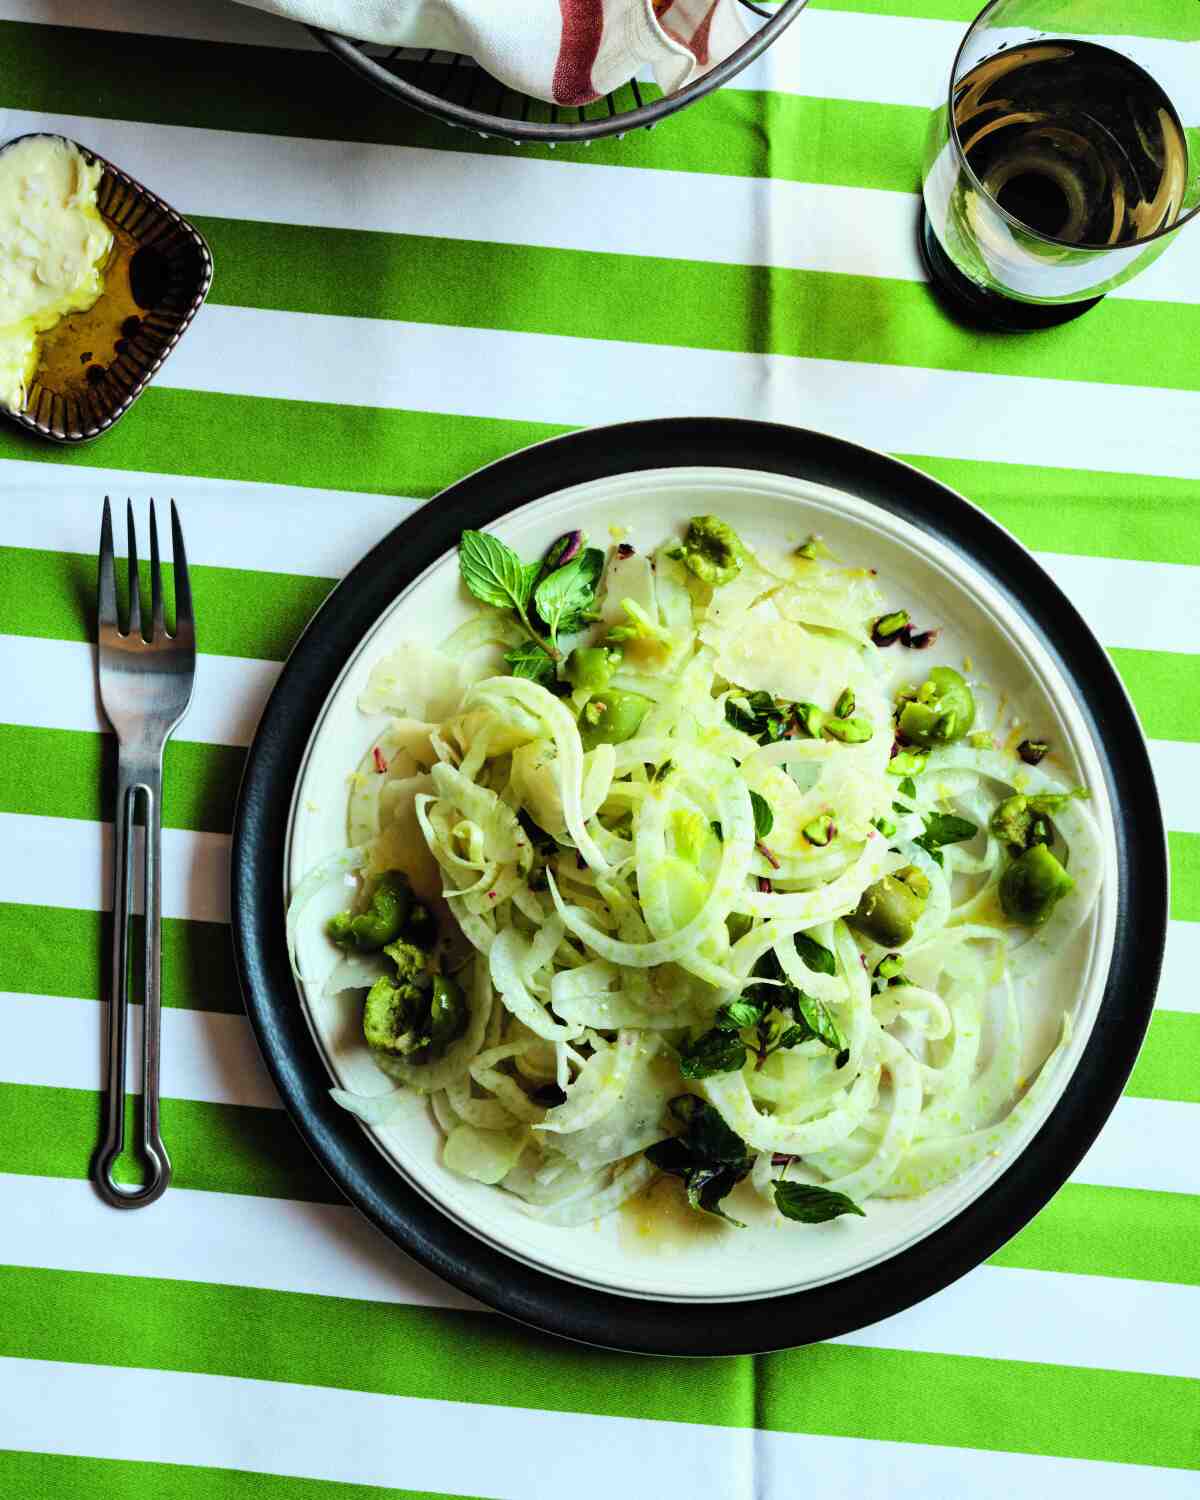 Fenchelsalat mit würzigen grünen Oliven und zerstoßenen Pistazien auf einem Teller auf einer grün-weiß gestreiften Tischdecke